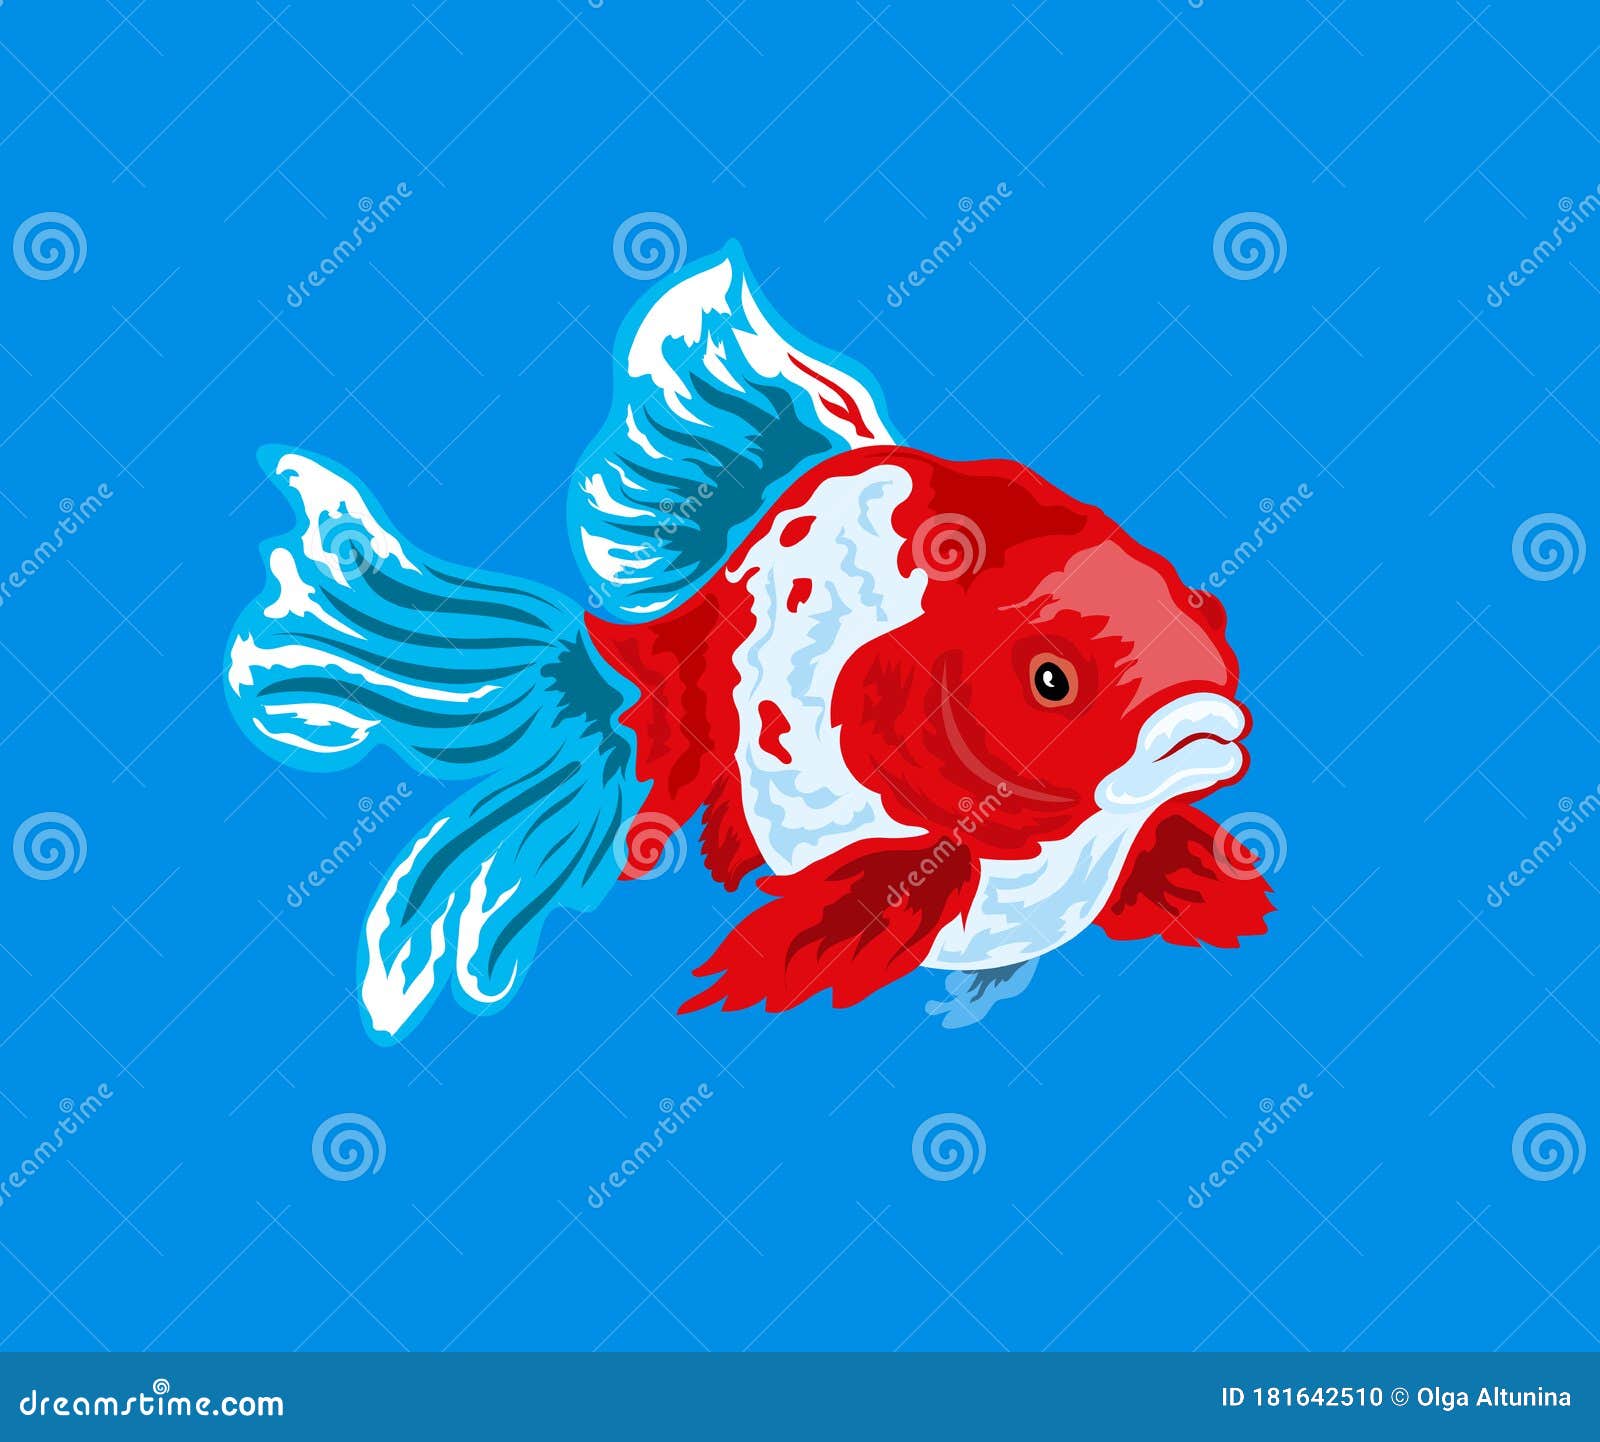 Modèle de logo coloré dégradé de poisson rouge